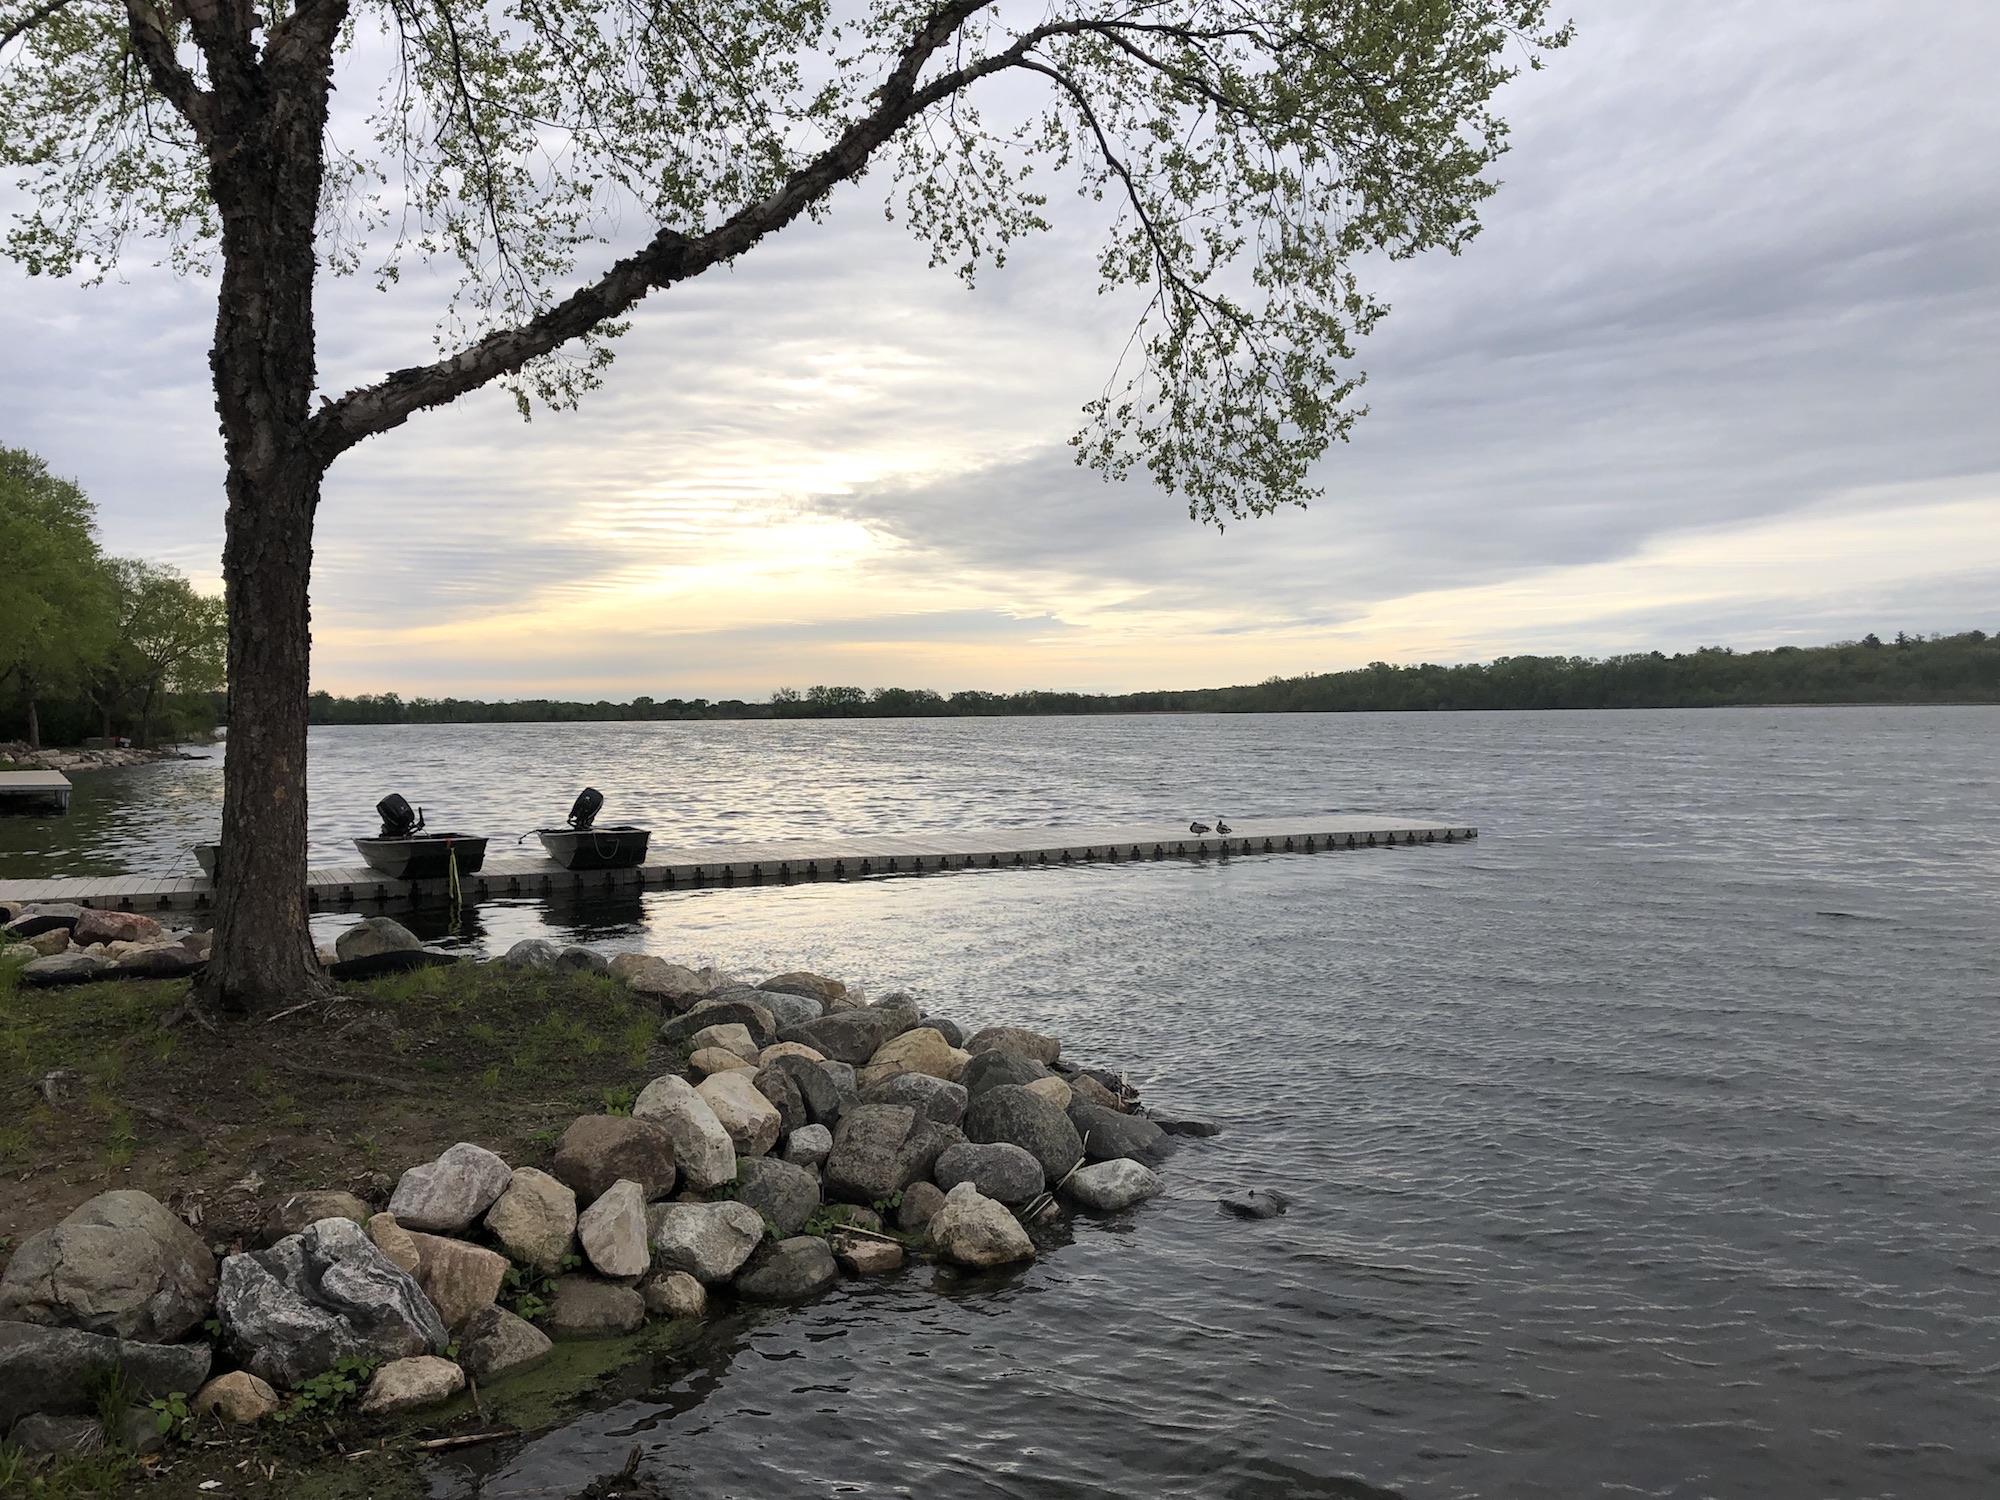 Lake Wingra on May 21, 2019.